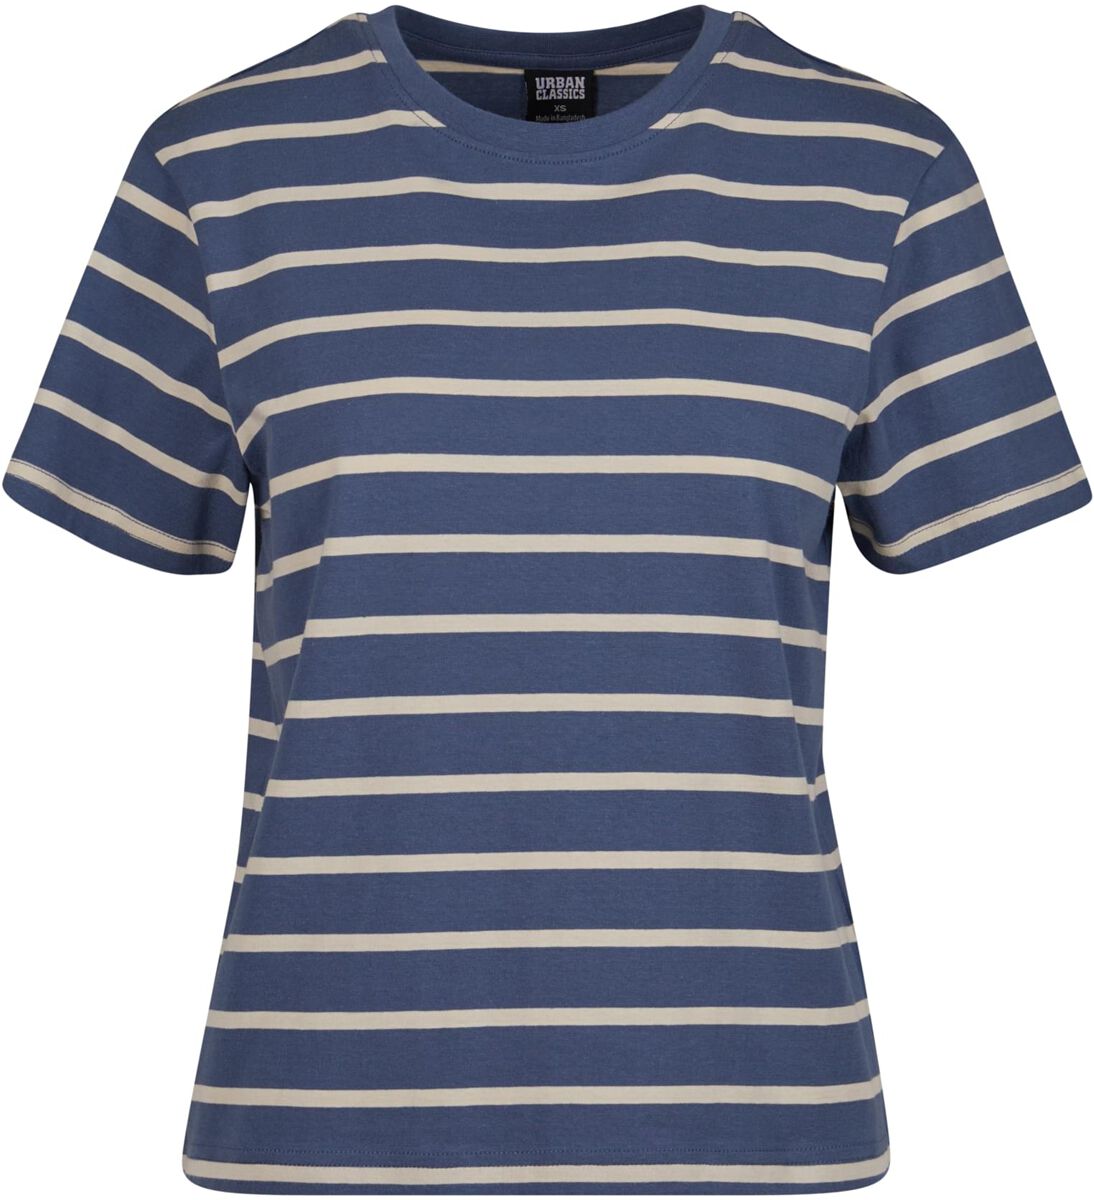 Urban Classics T-Shirt - Ladies Striped Boxy Tee - XS bis 4XL - für Damen - Größe 4XL - blau